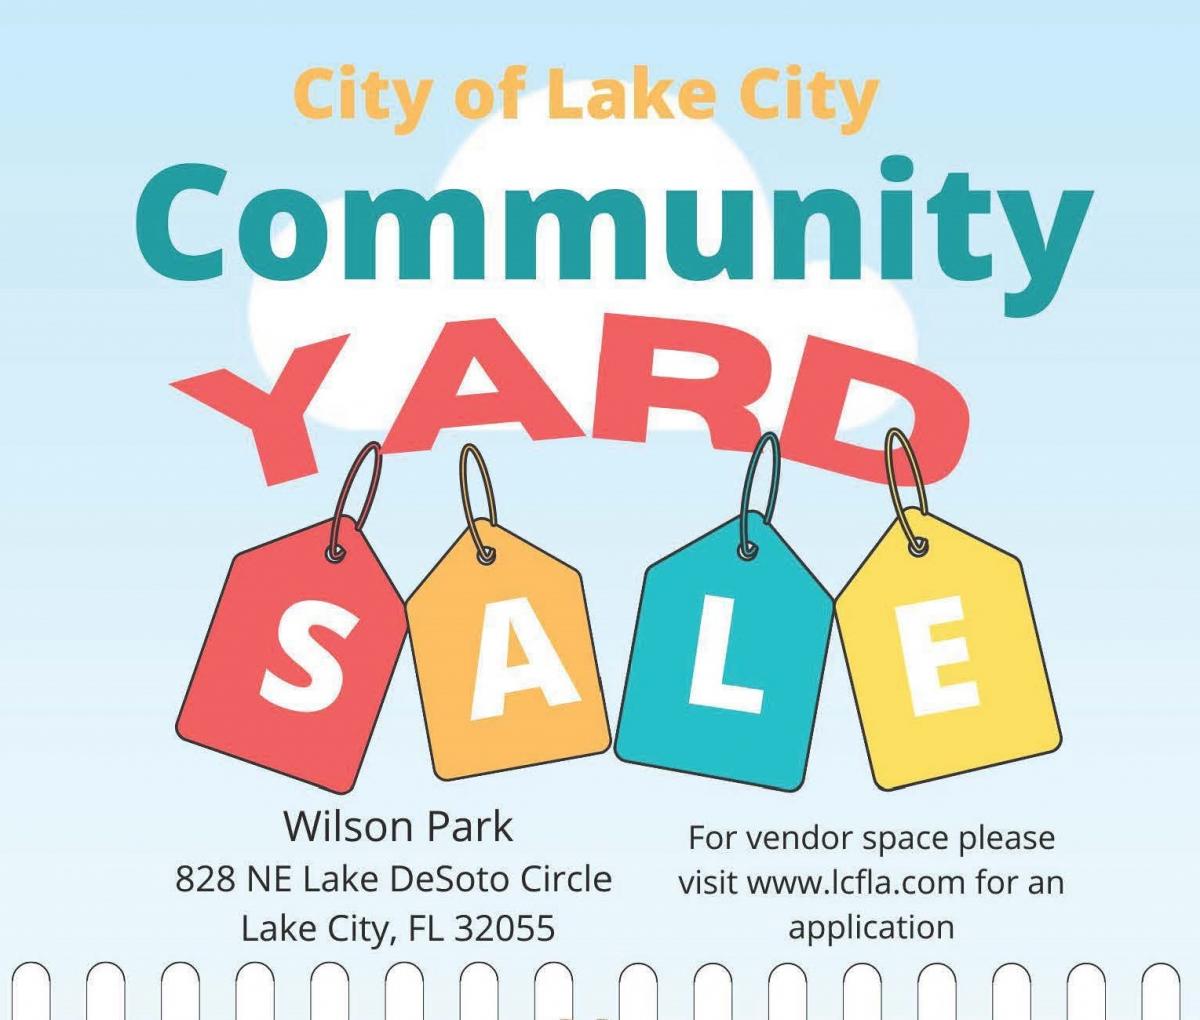 Community Yard Sale Flyer